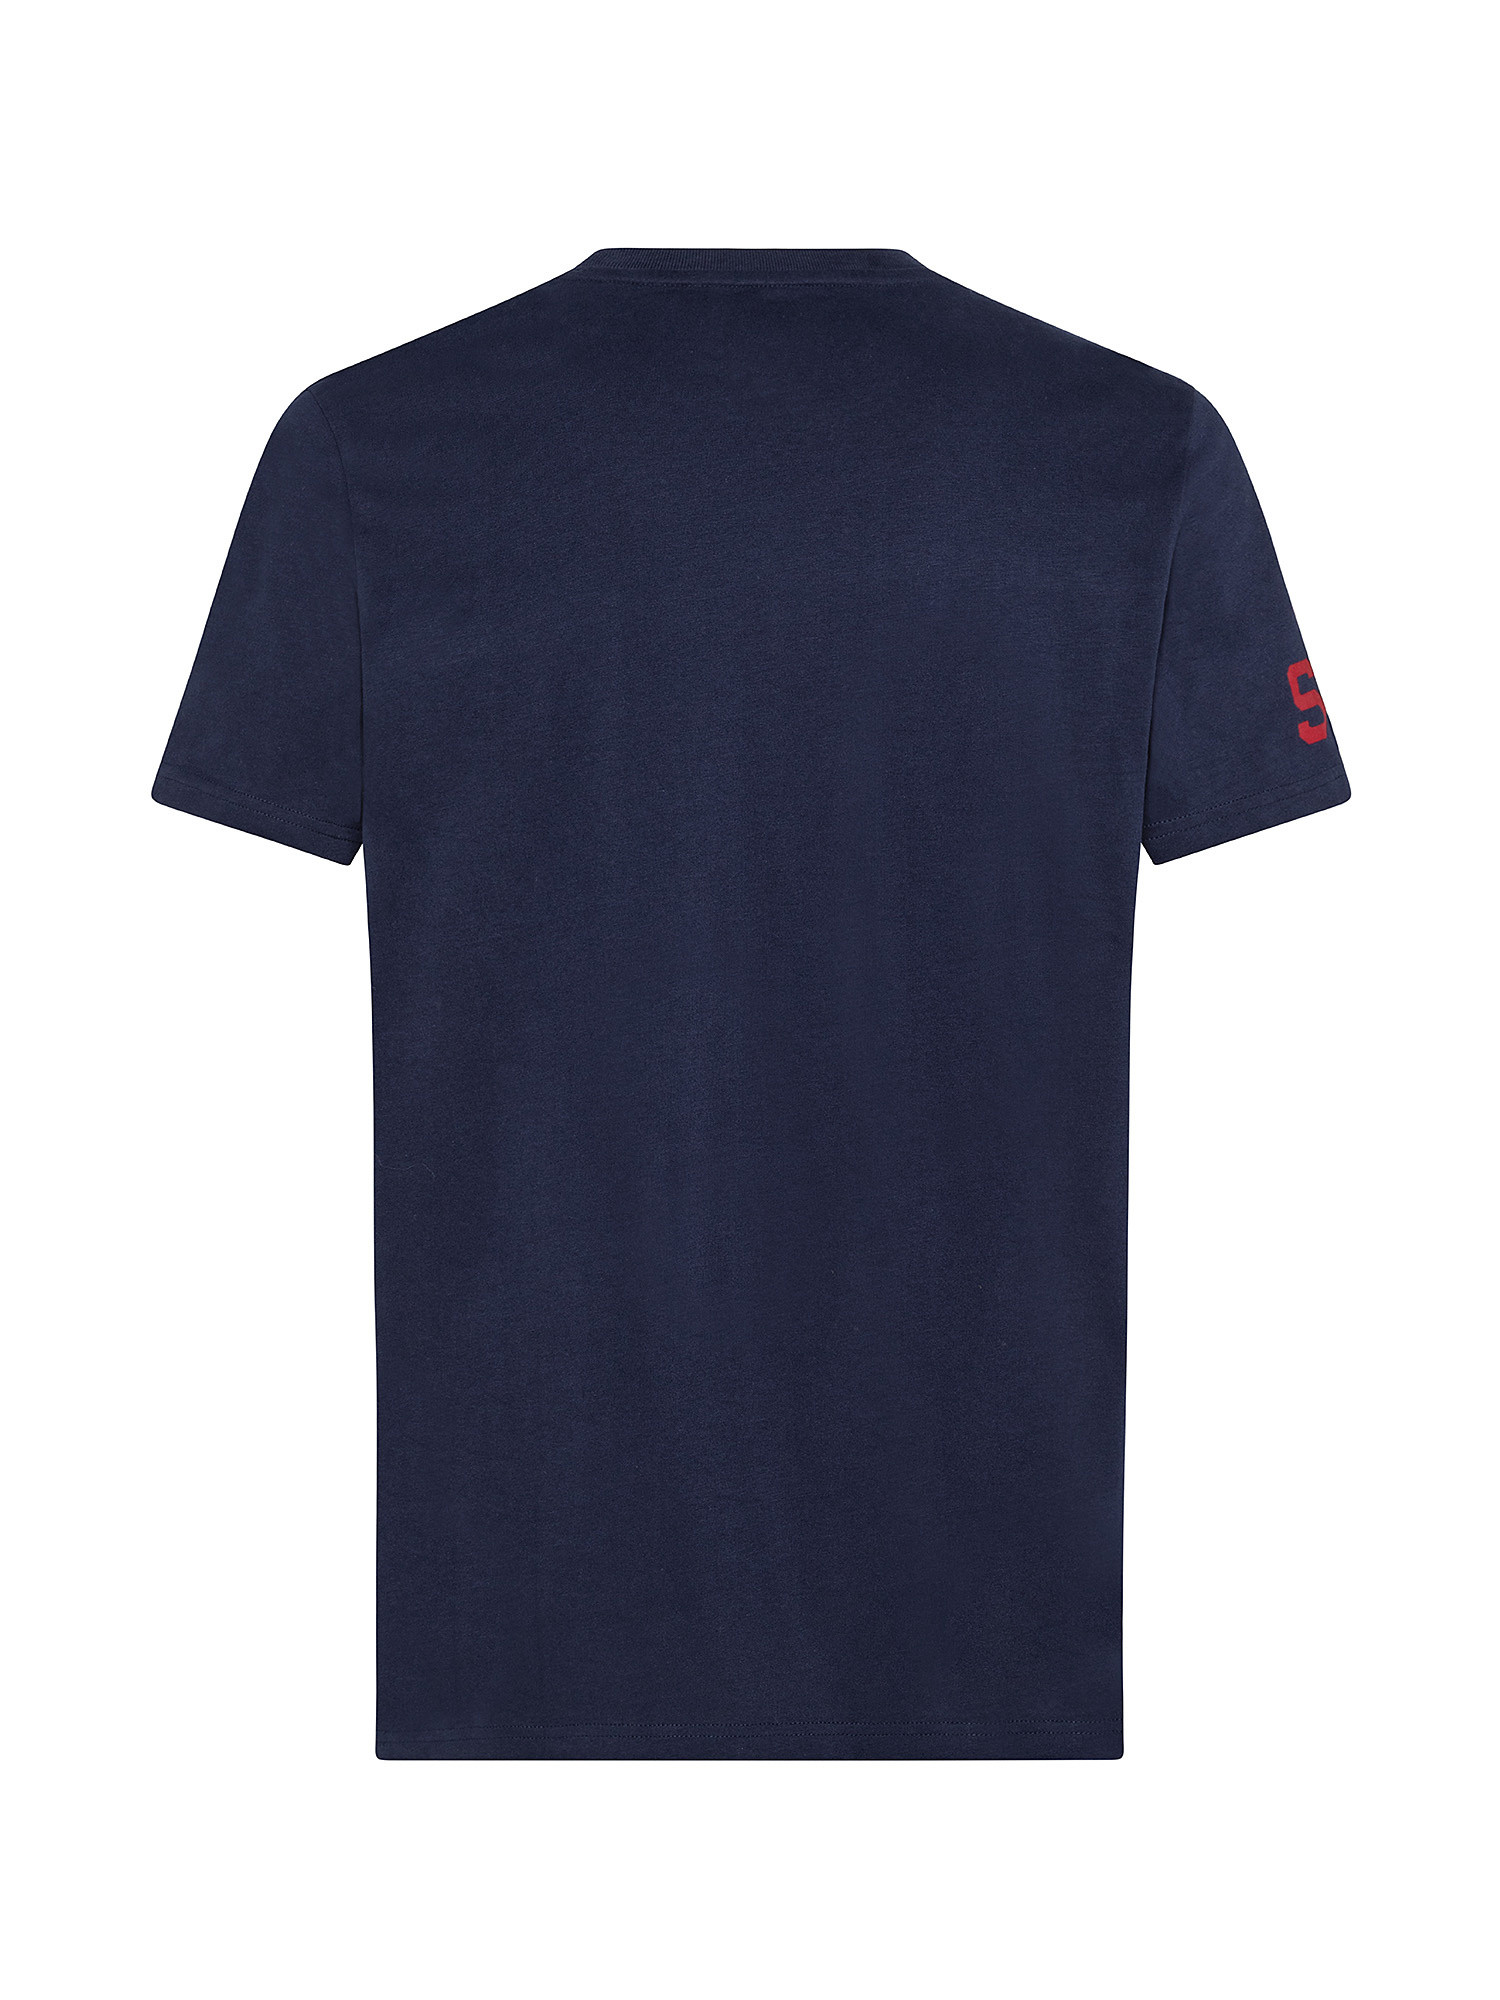 Vintage Athletic t-Shirt, Blu, large image number 1